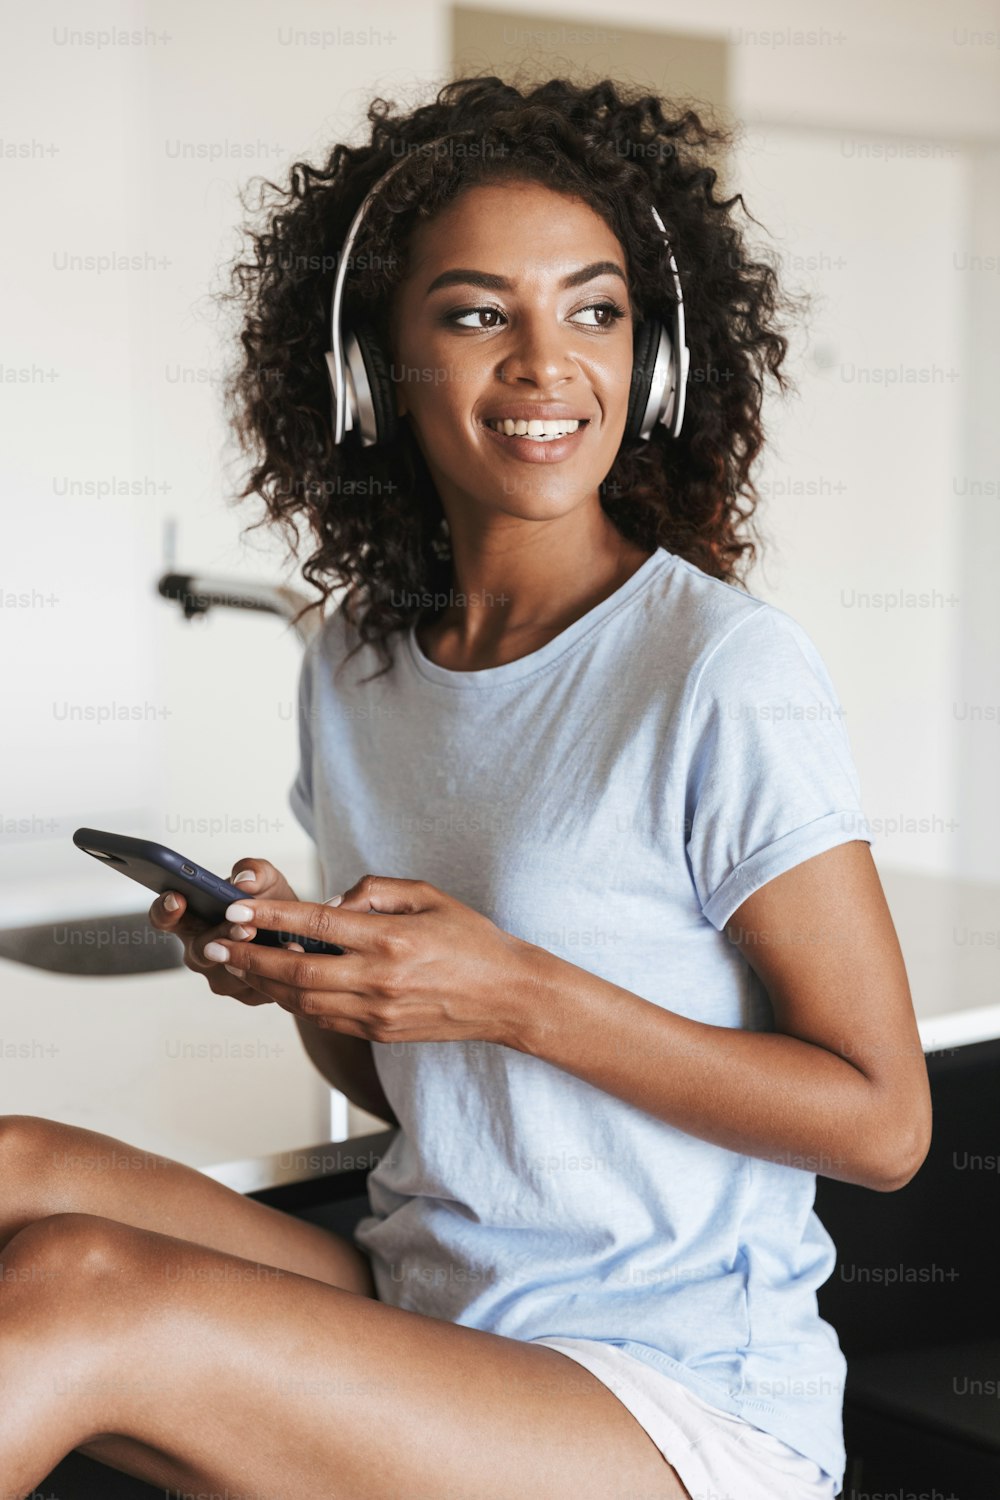 집에서 의자에 앉아 있는 동안 휴대전화를 사용하는 헤드폰을 쓴 매력적인 아프리카 여성